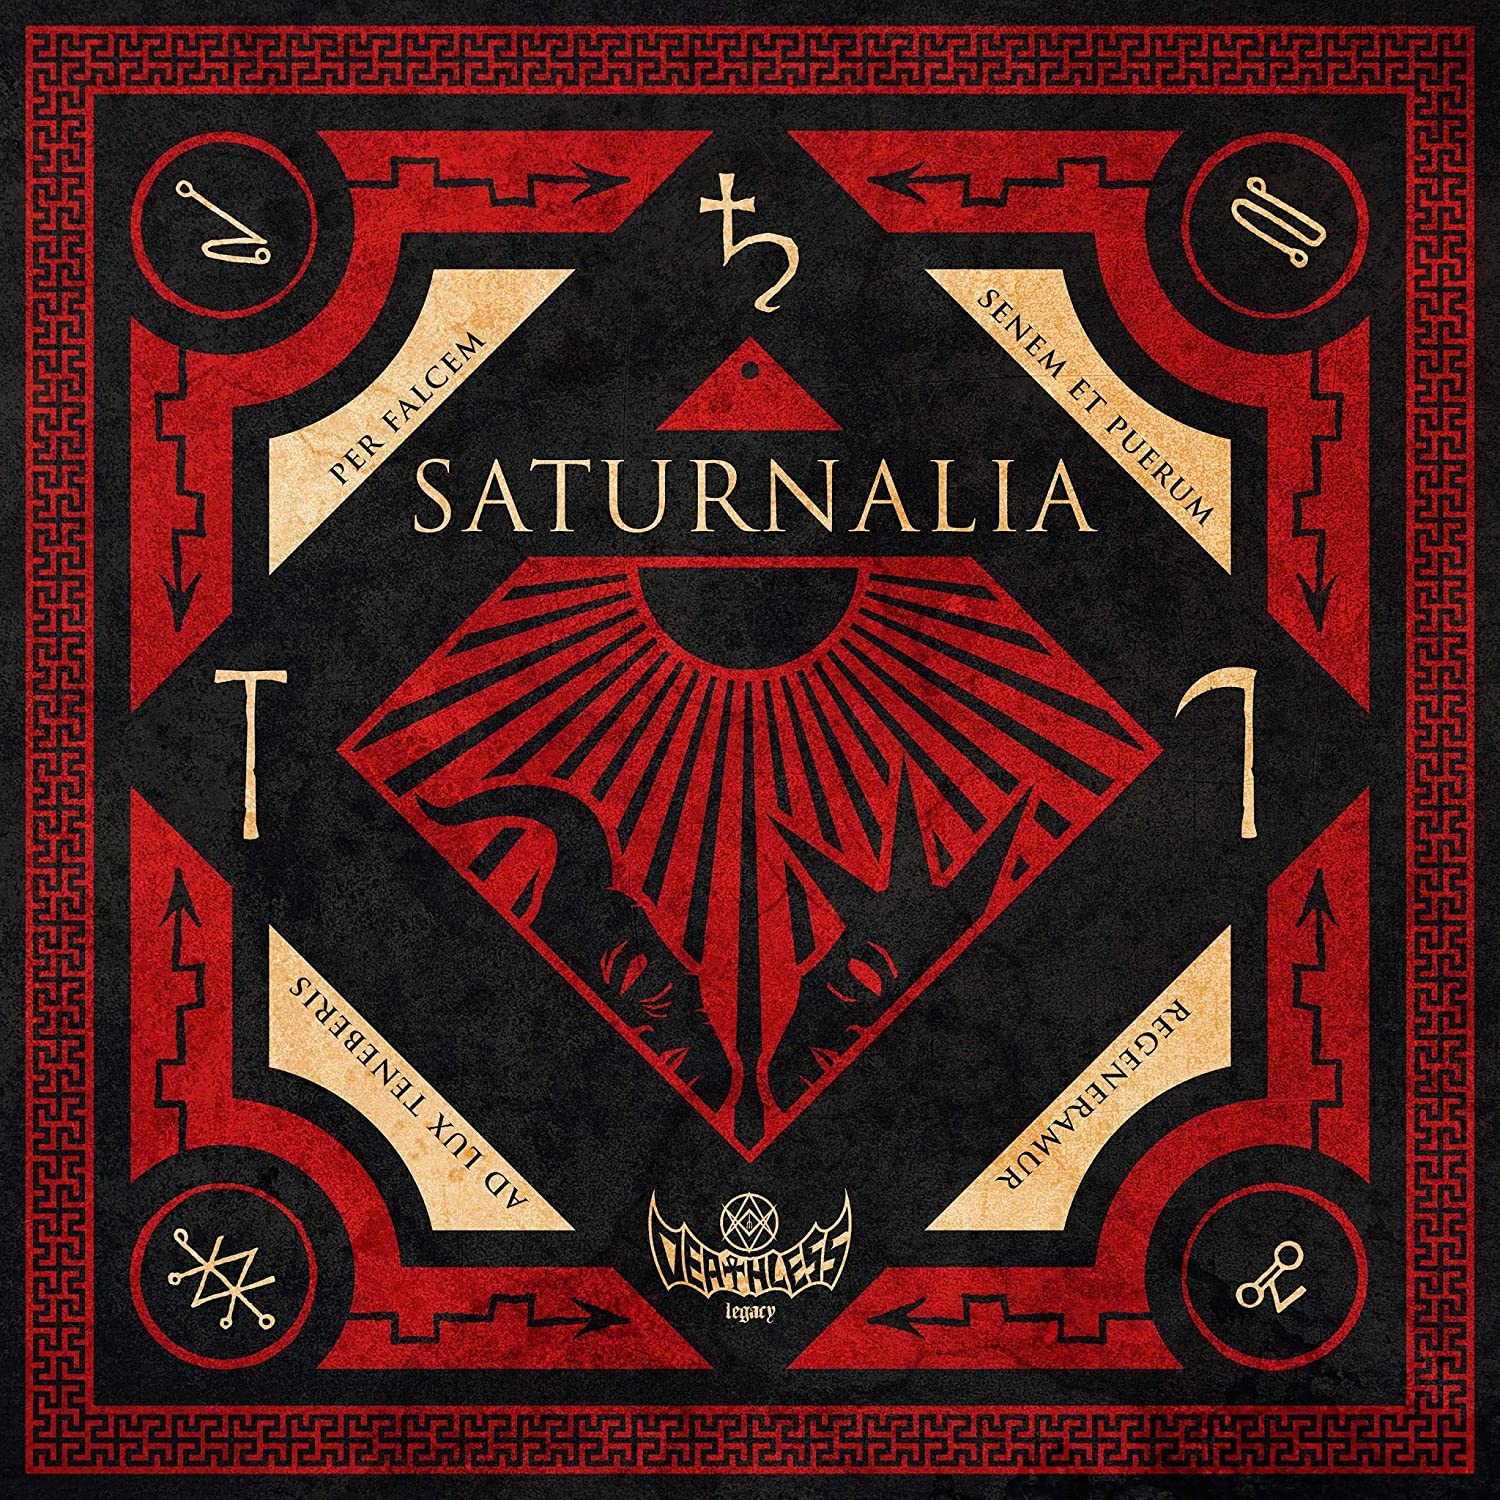 Deathless Legacy: Saturnalia